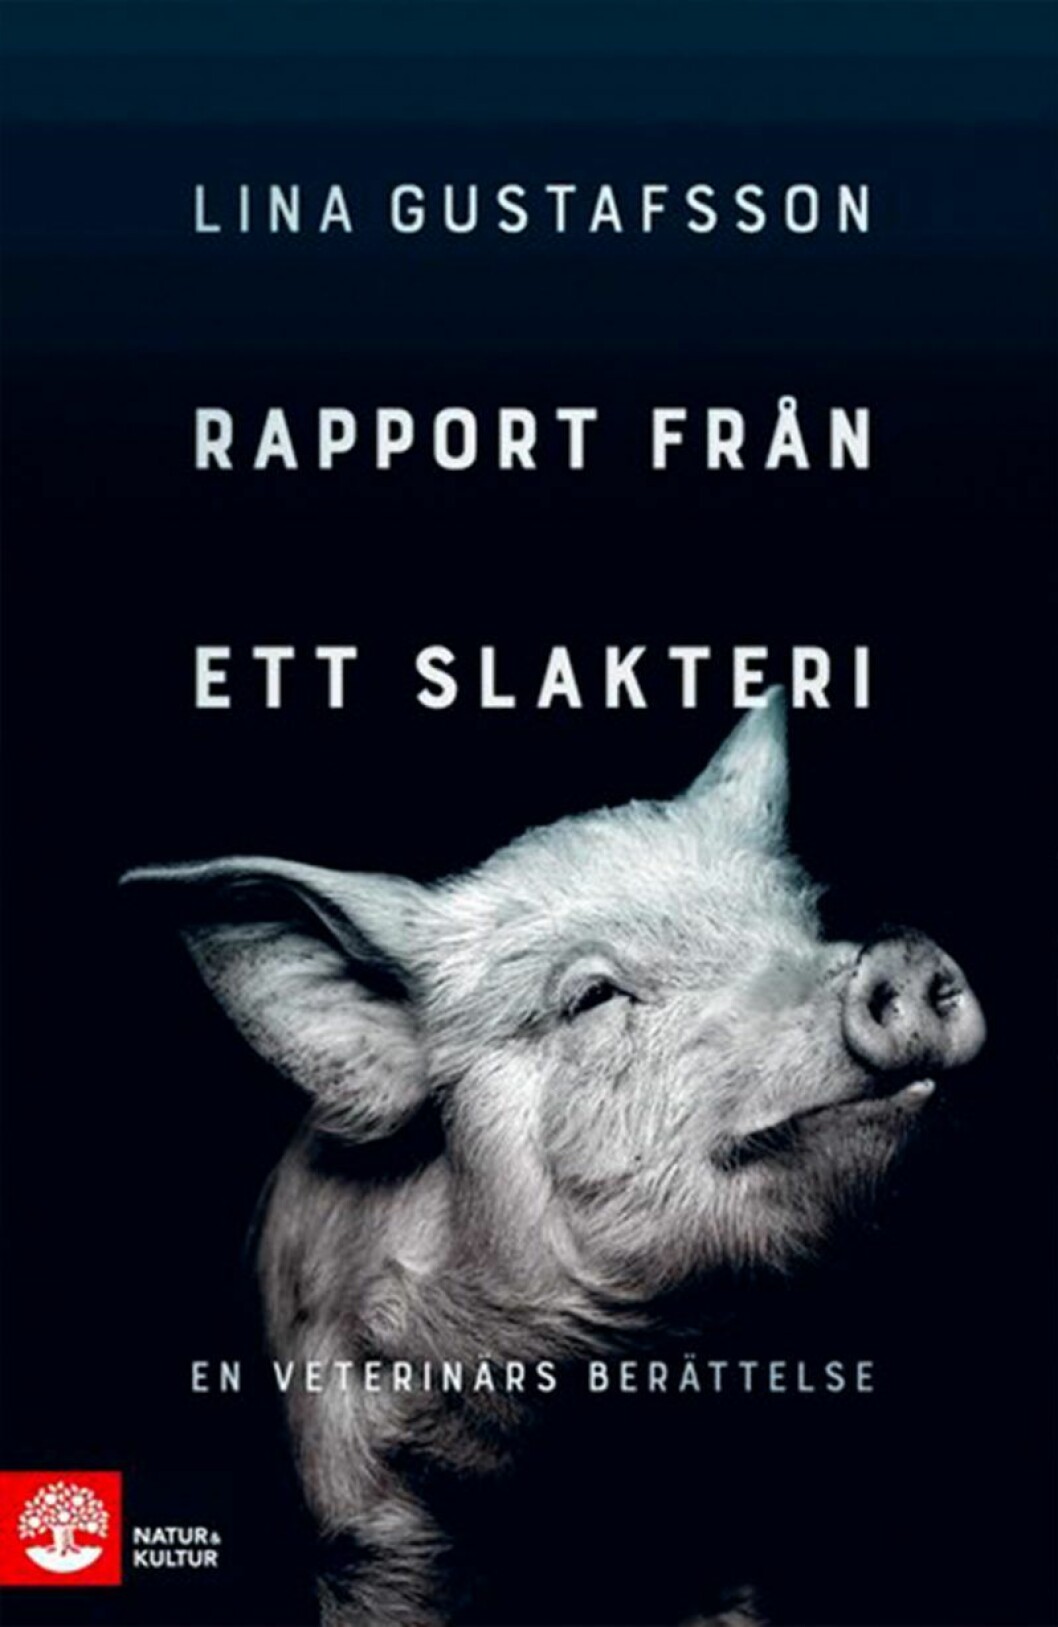 Bokomslag till Rapport från ett slakteri, en svartvit bild på en gris.